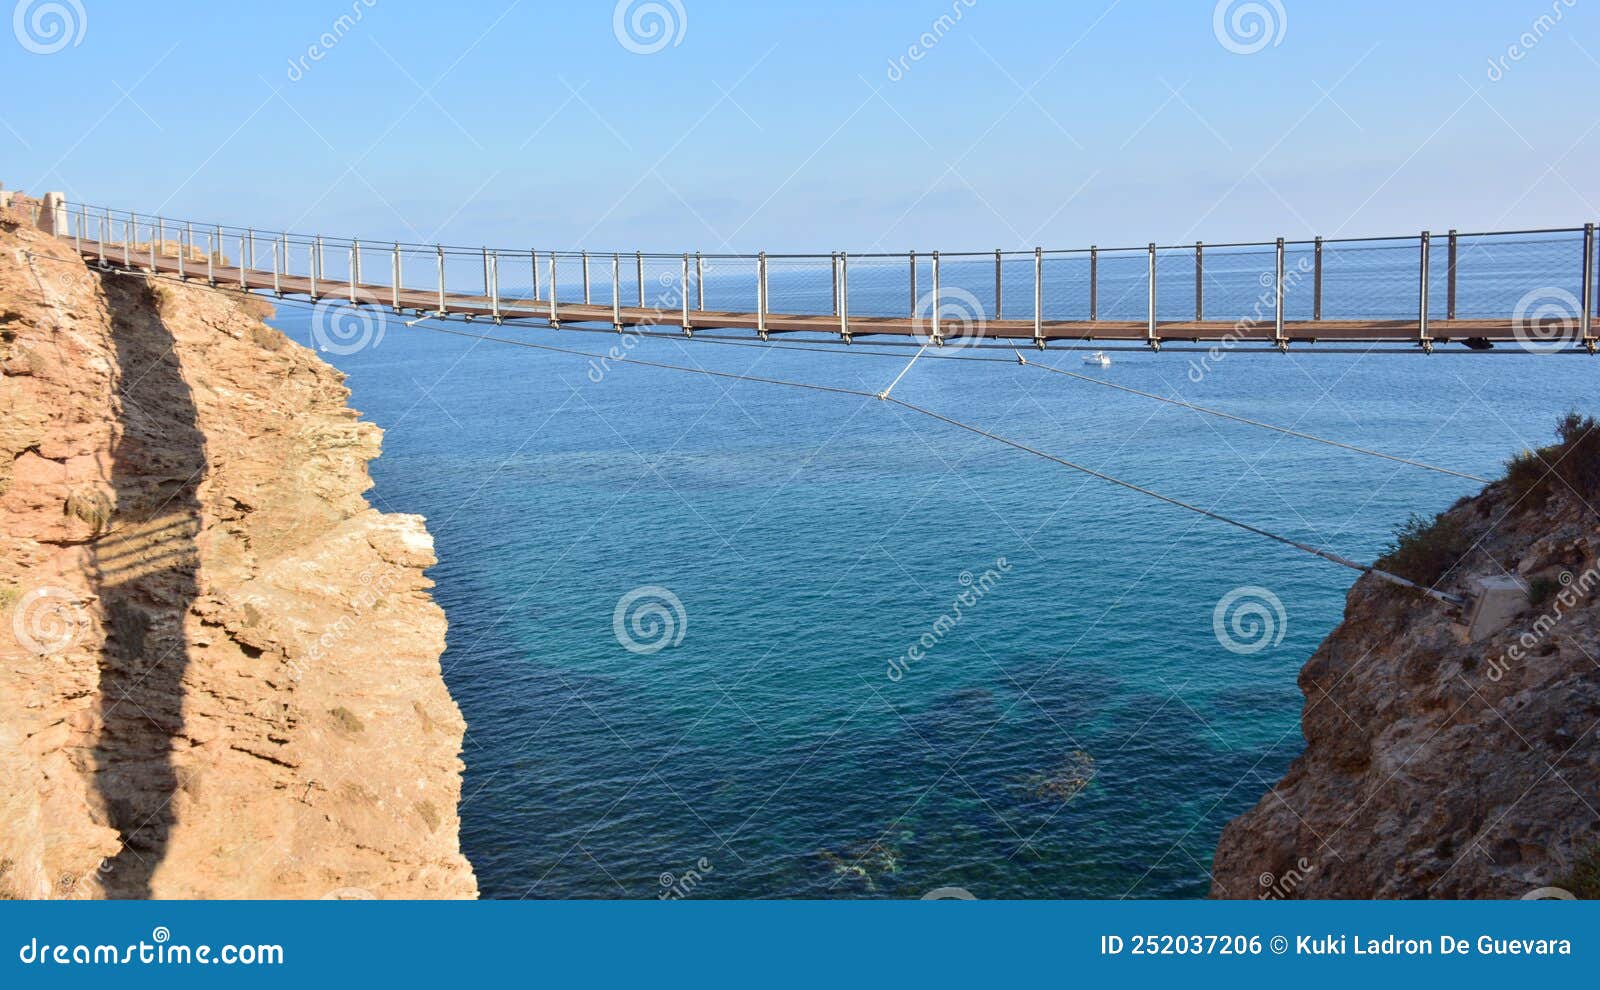 suspension bridge in torrenueva beach, granada